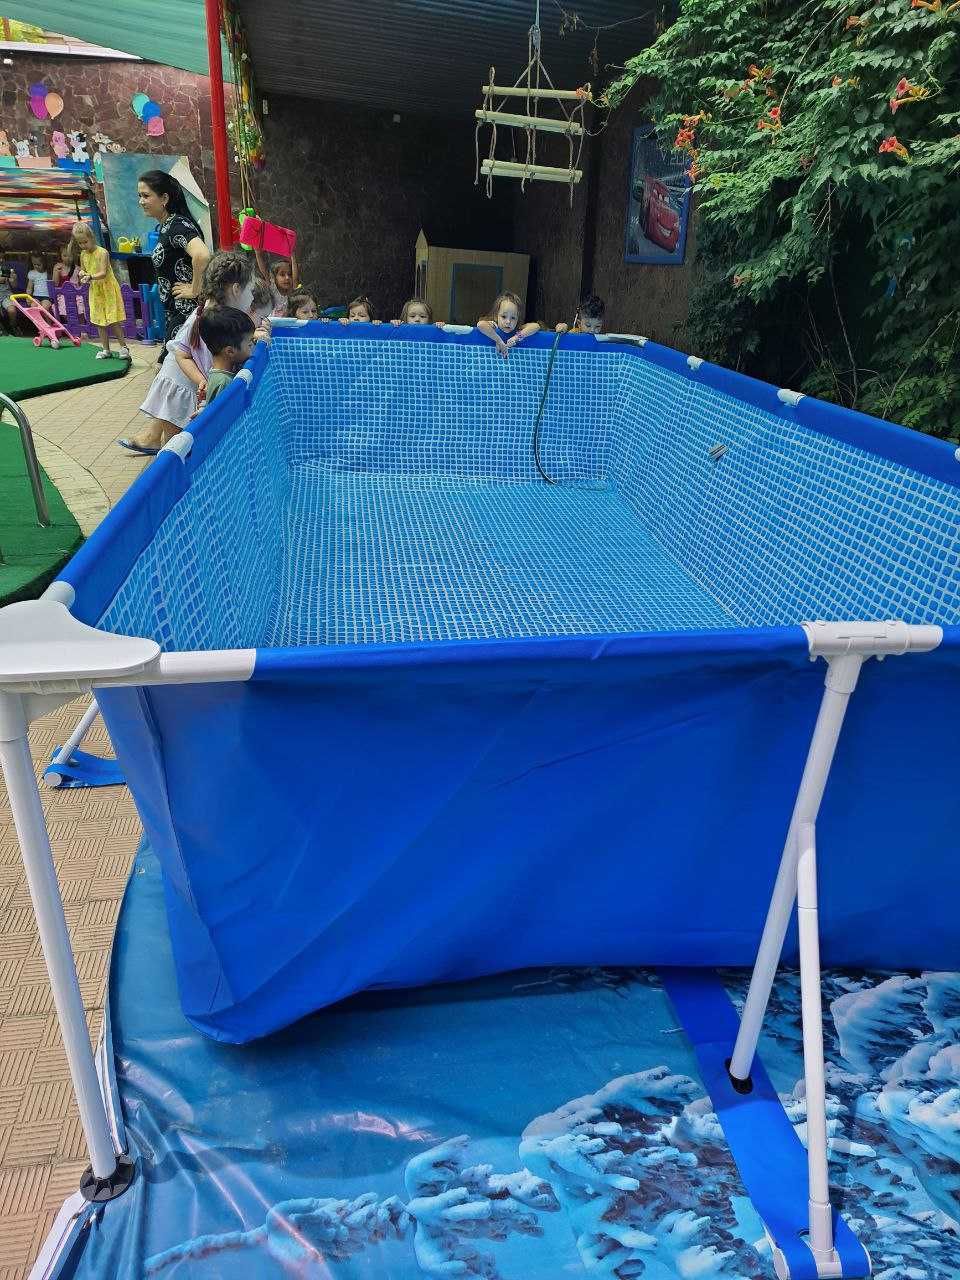 Basseyn каркасный Intex 450×220×84 cm бассейн